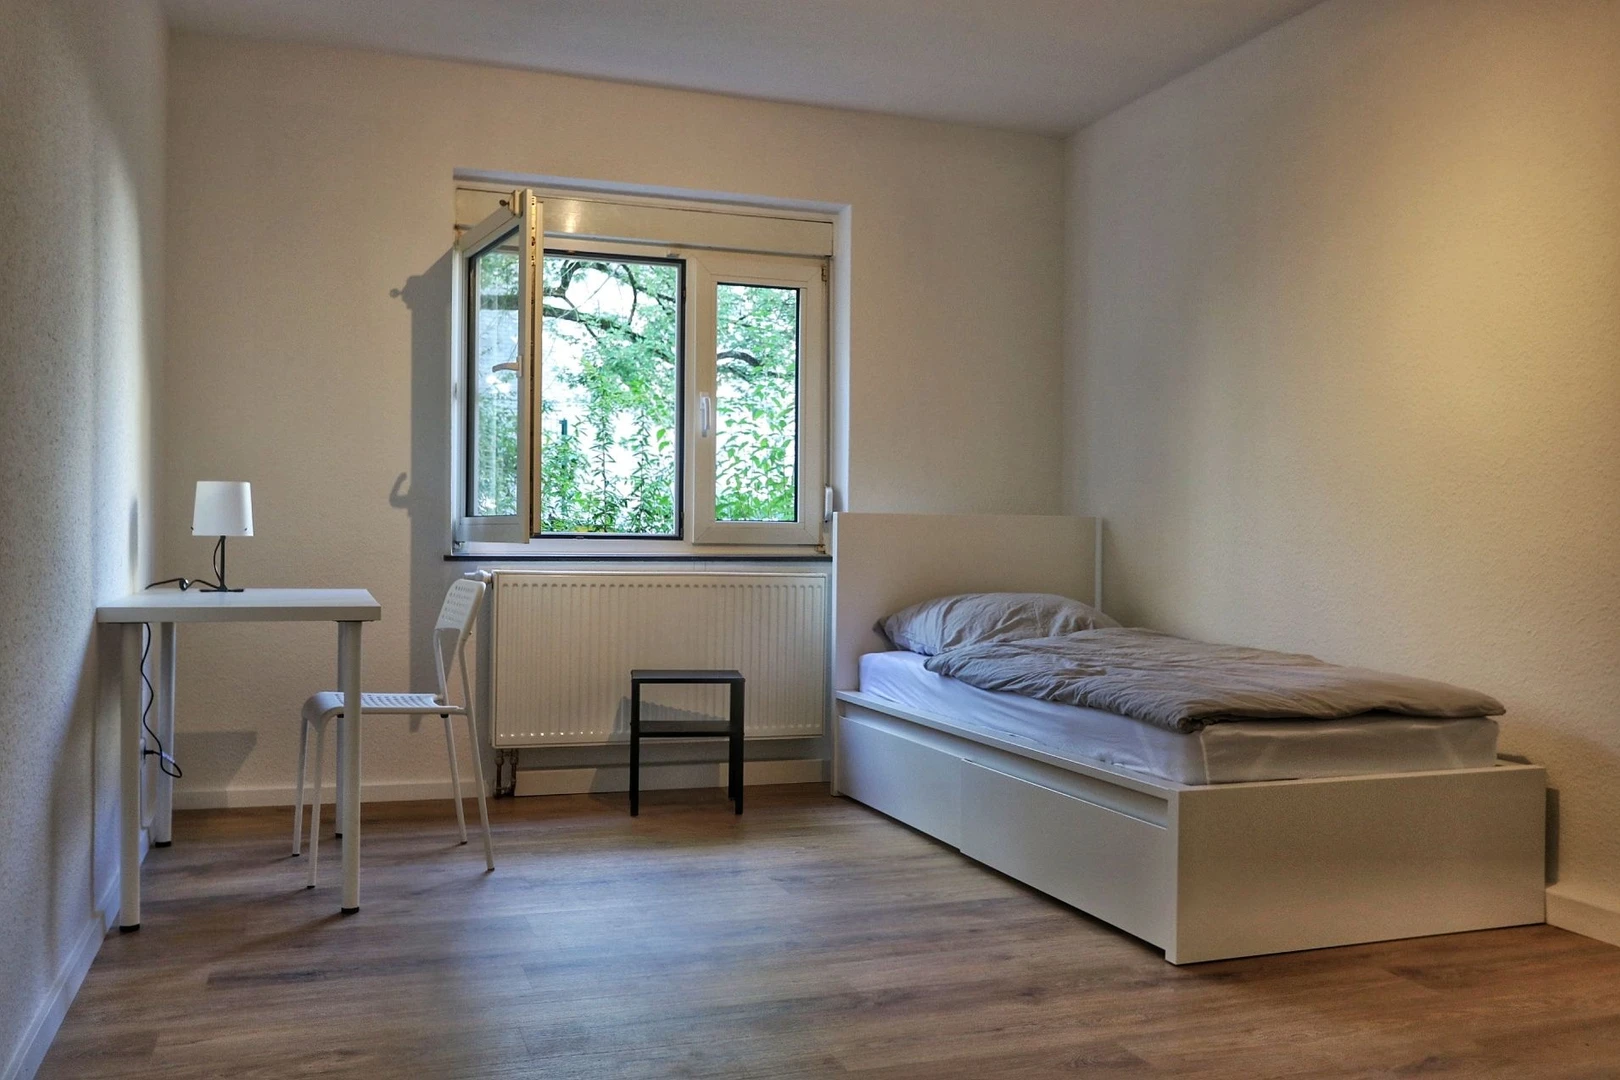 Monatliche Vermietung von Zimmern in Bergisch Gladbach